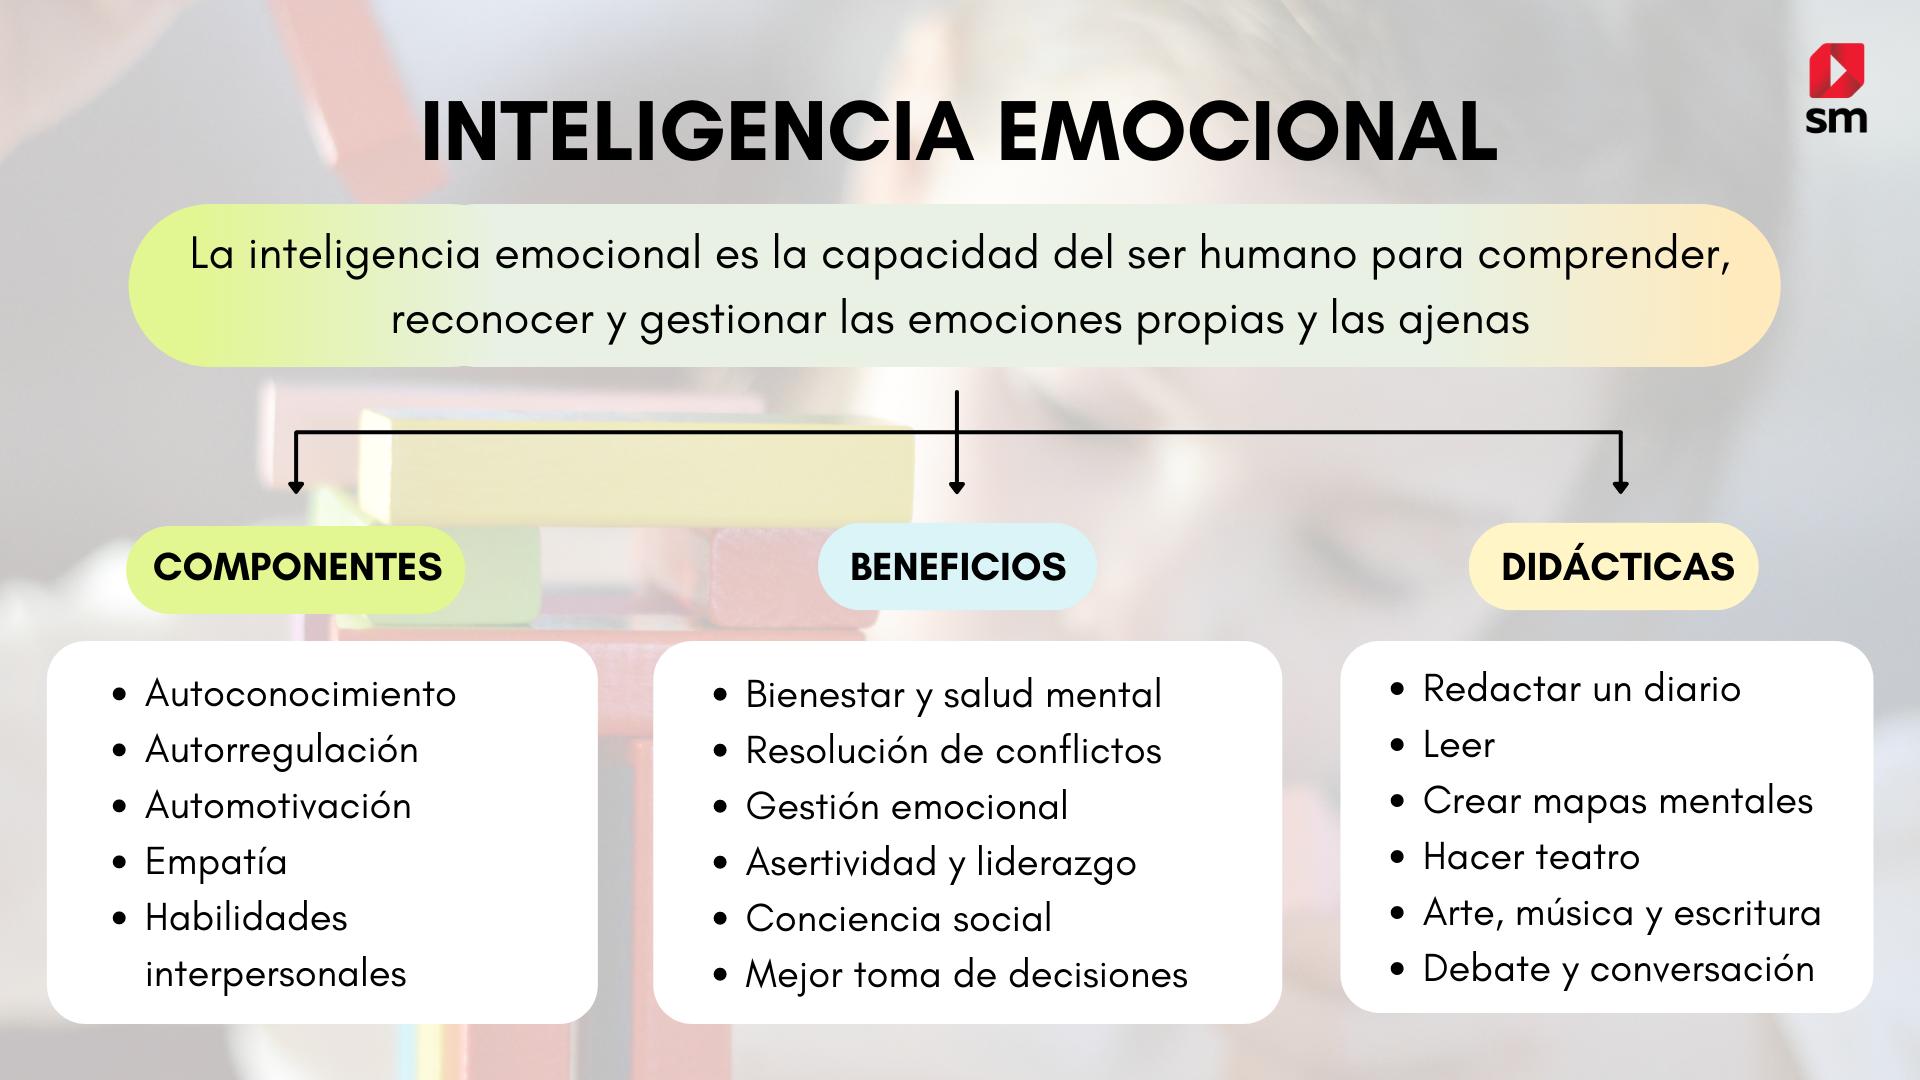 de que inteligencia esta formada la inteligencia emocional - Qué tipo de inteligencia es la inteligencia emocional